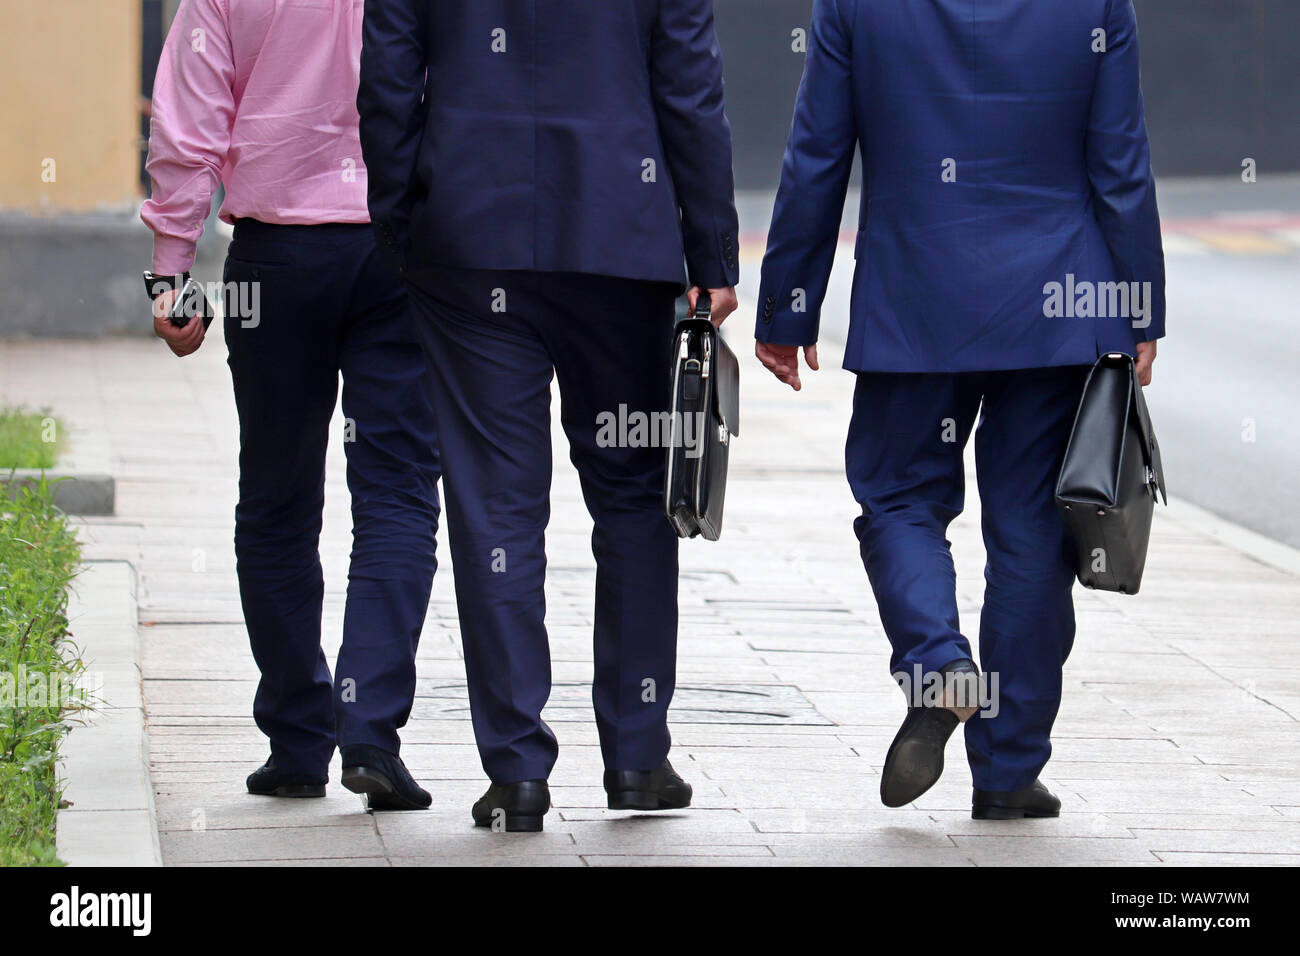 Les hommes en costumes avec un porte-documents marche sur une rue, vue arrière. Concept de l'élégant les personnes réussies, partenaires, entrepreneurs, officiel, carrière Banque D'Images